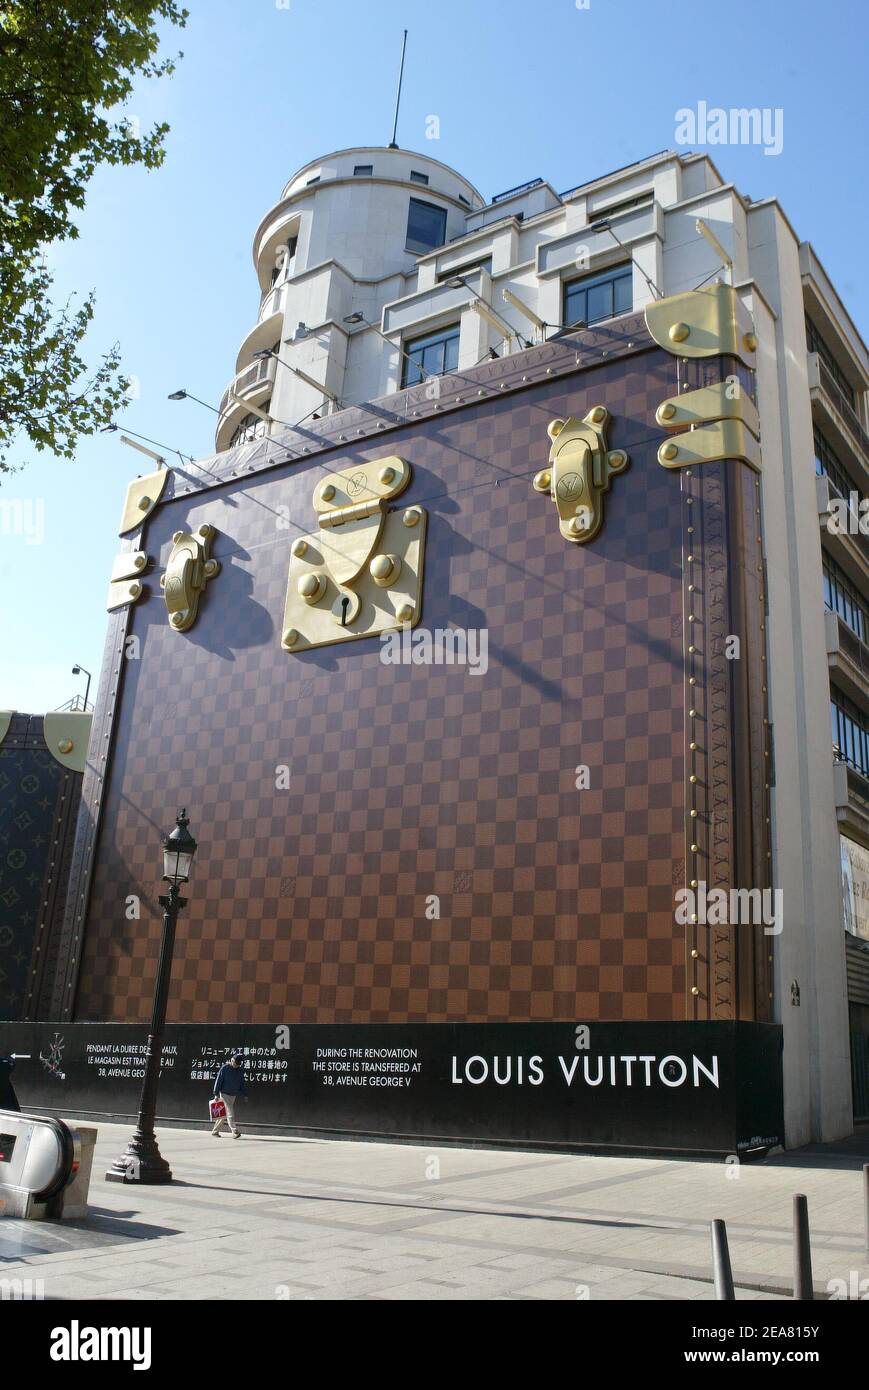 Louis vuitton paris Stock Vector Images - Alamy